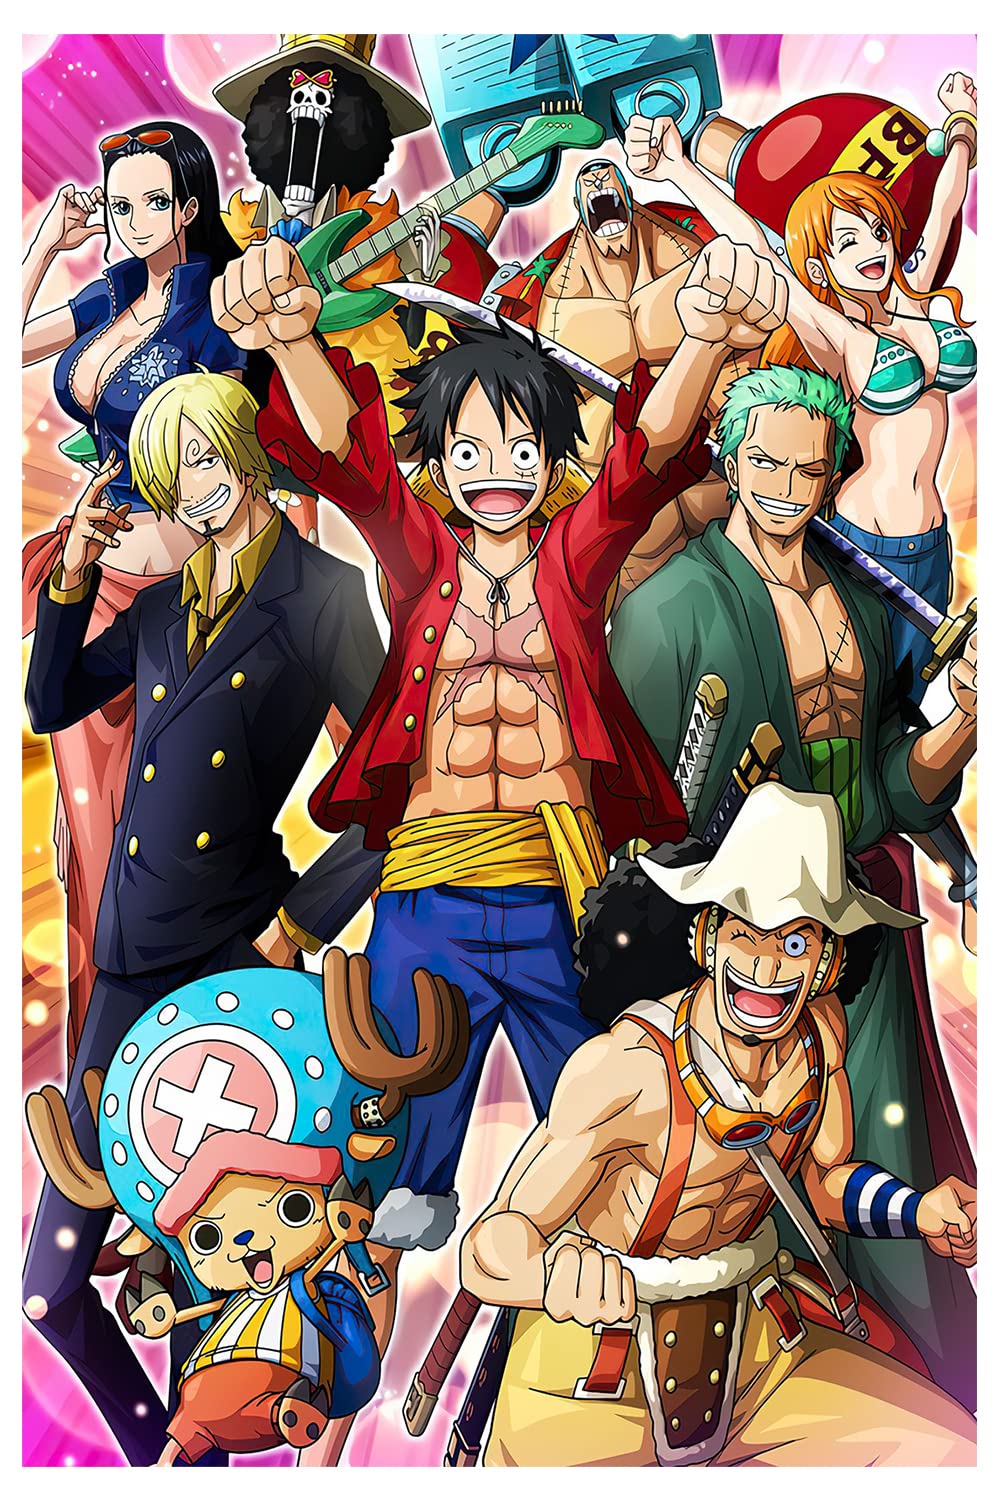 99 Ảnh Usopp One Piece Ngầu Hài Hước Và Ngộ Nghĩnh Nhất